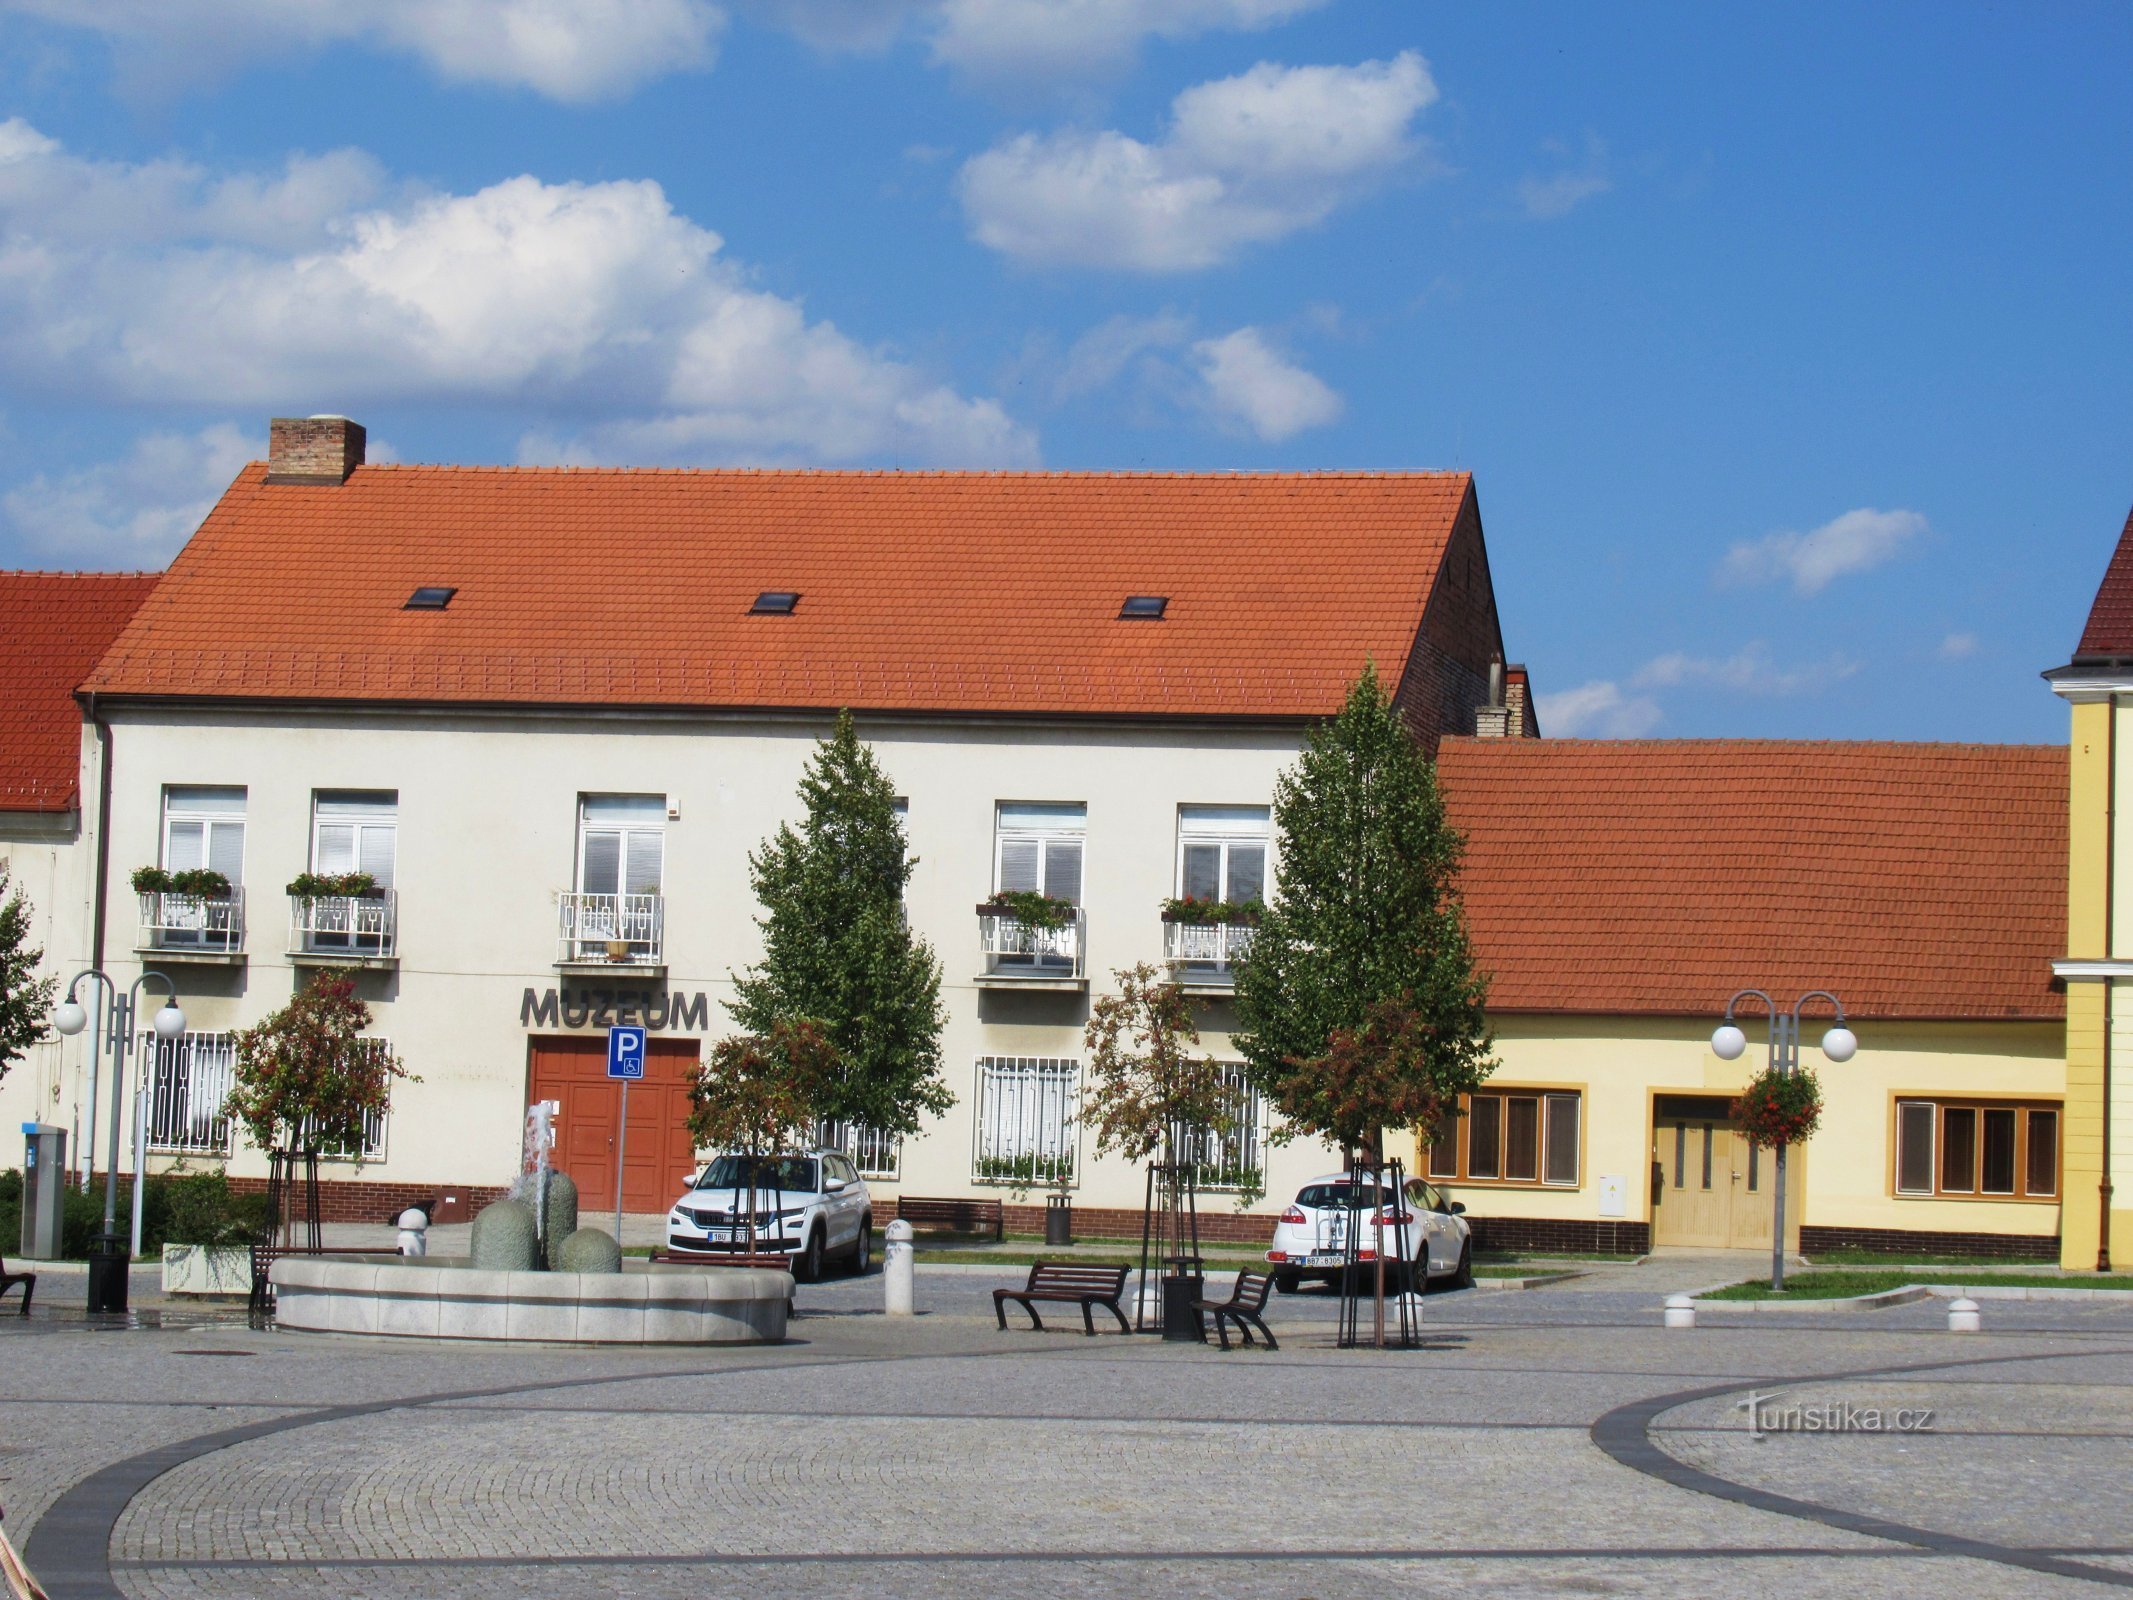 O Museu Municipal Masaryk em Veselí nad Moravou